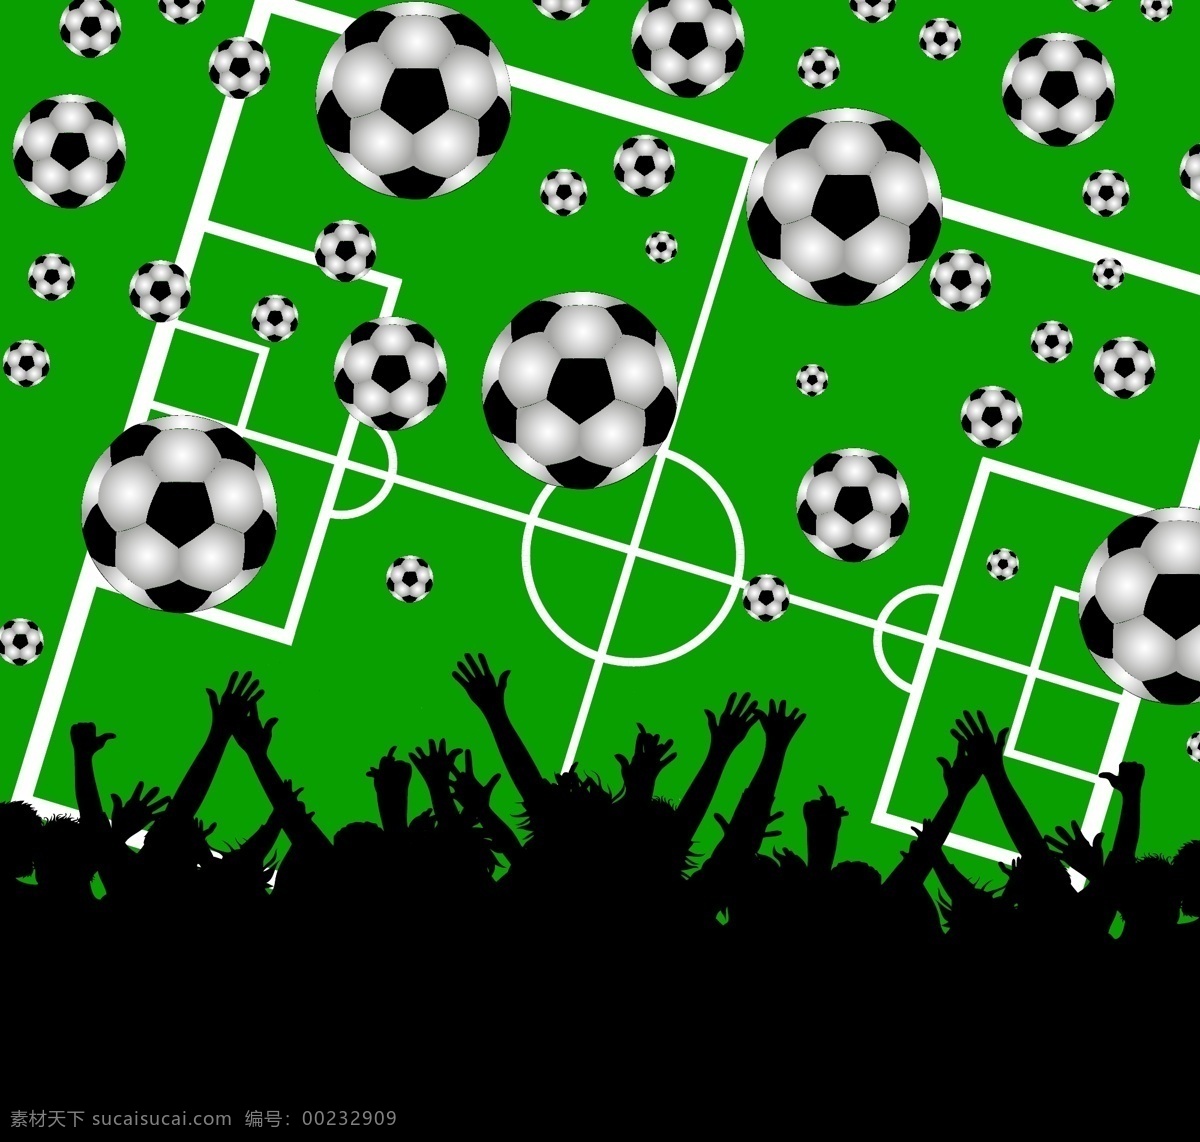 足球主题设计 足球 主题设计 草地 足球素材 奖杯 球迷 球门 守门员 运动员 球员 矢量广告设计 文化艺术 体育运动